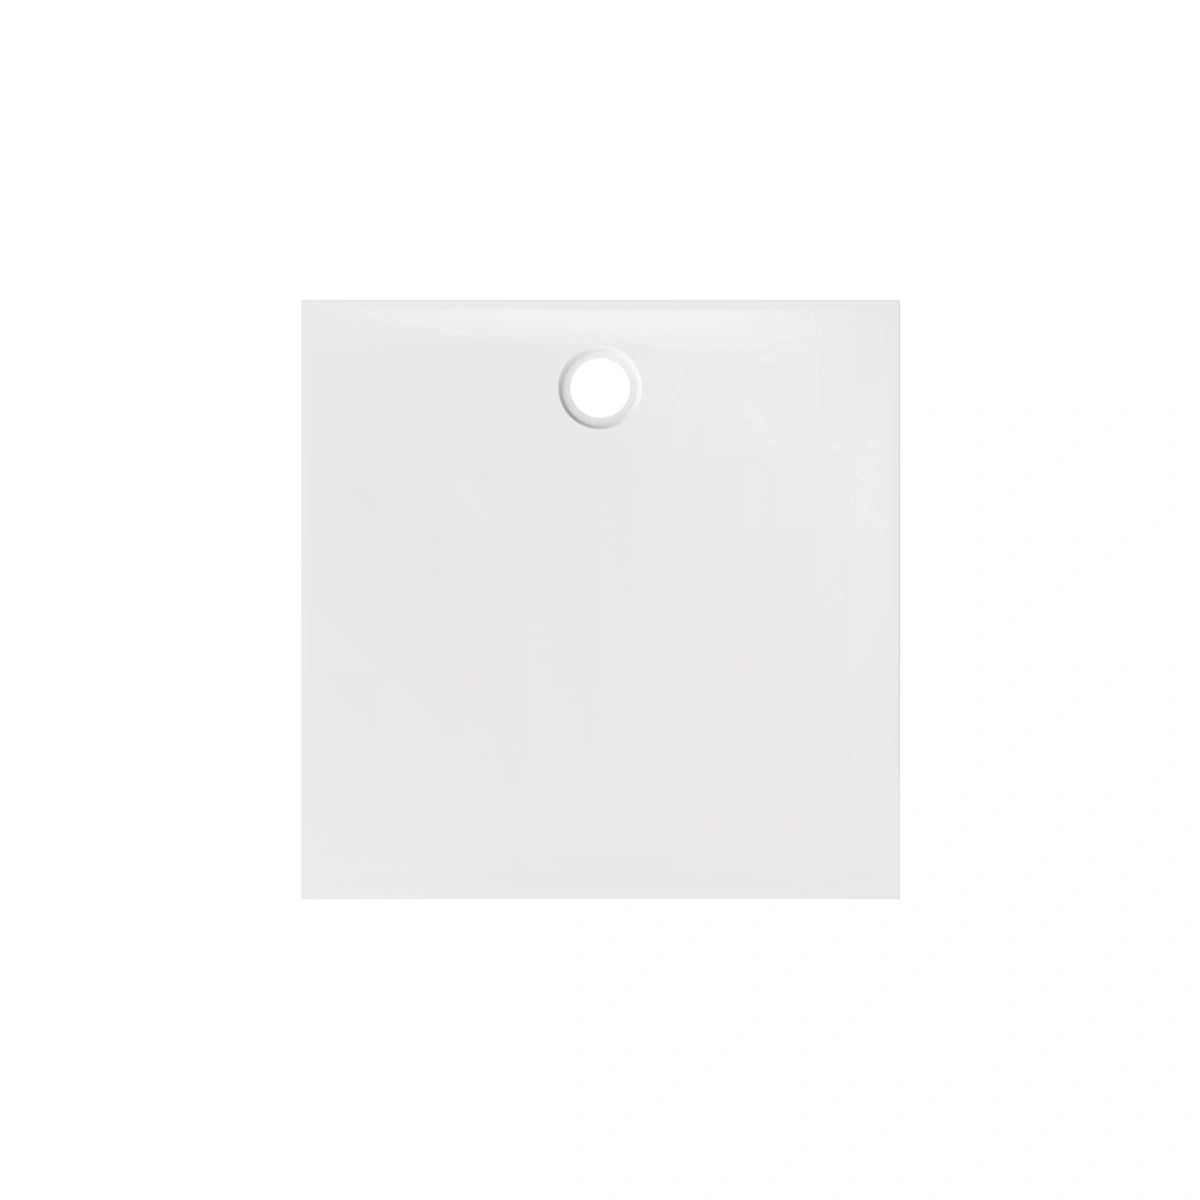 Plato de ducha Newforce 2.0 - 90cm x 90cm - blanco brillo